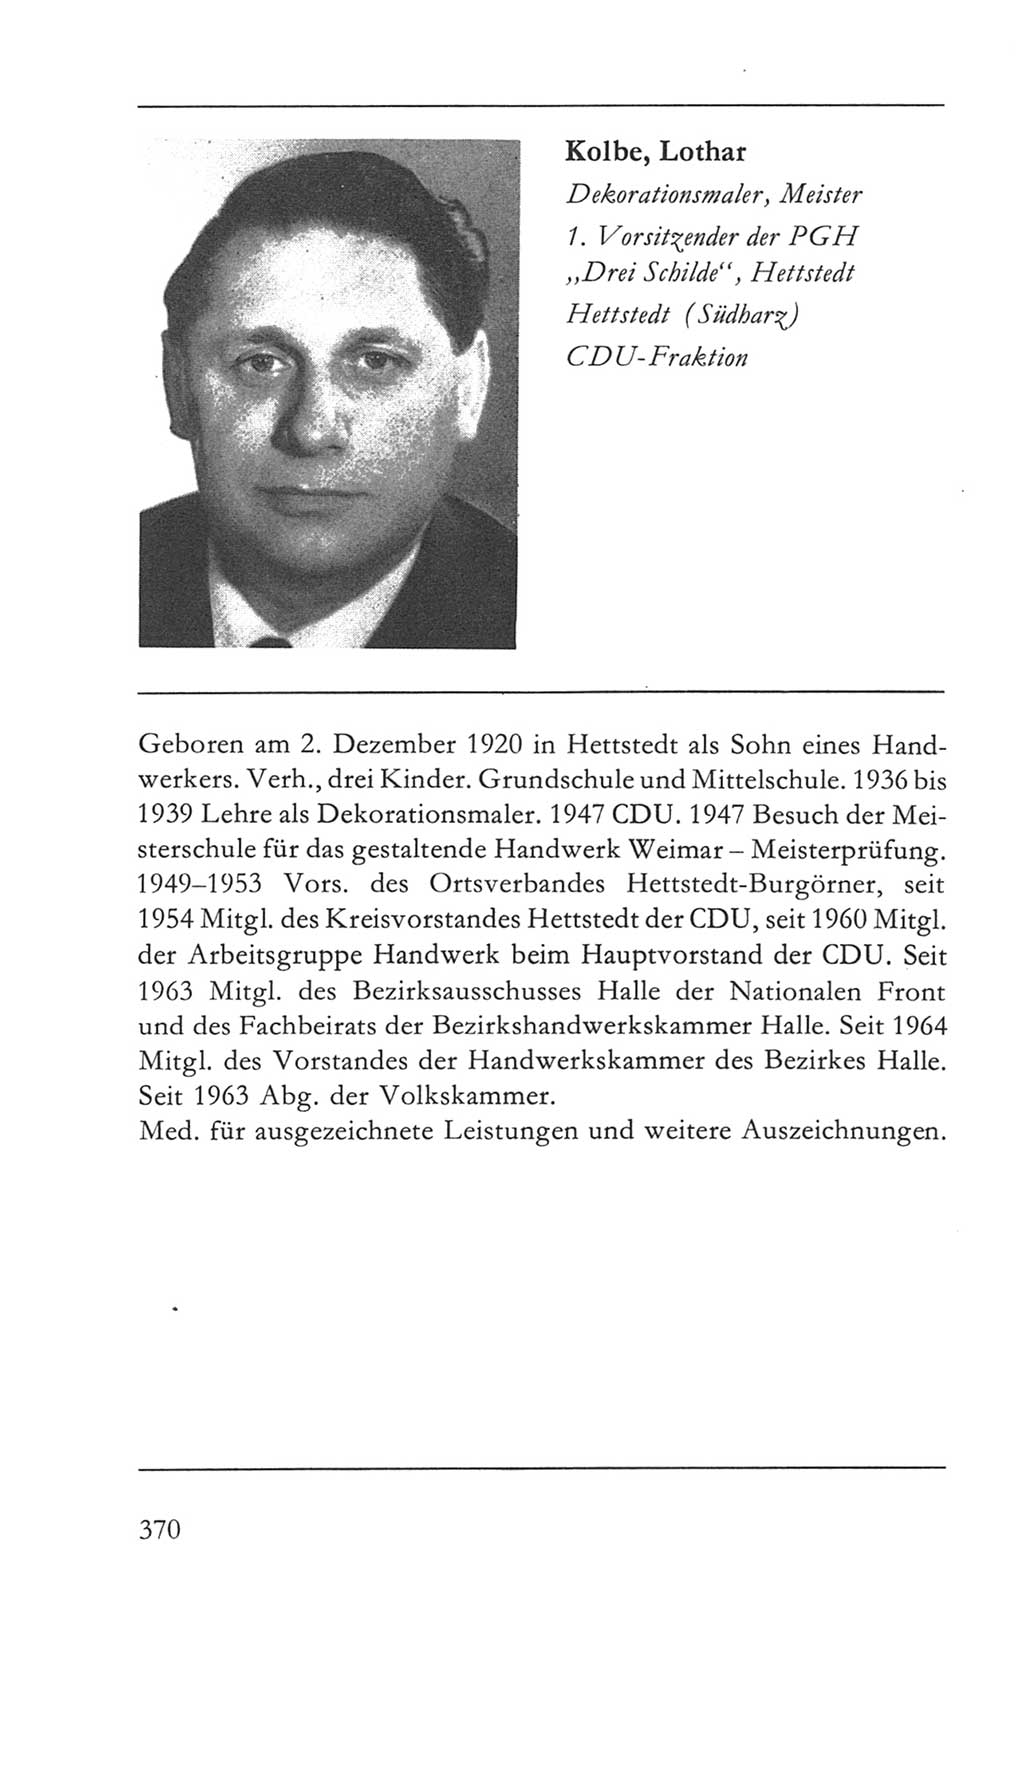 Volkskammer (VK) der Deutschen Demokratischen Republik (DDR) 5. Wahlperiode 1967-1971, Seite 370 (VK. DDR 5. WP. 1967-1971, S. 370)